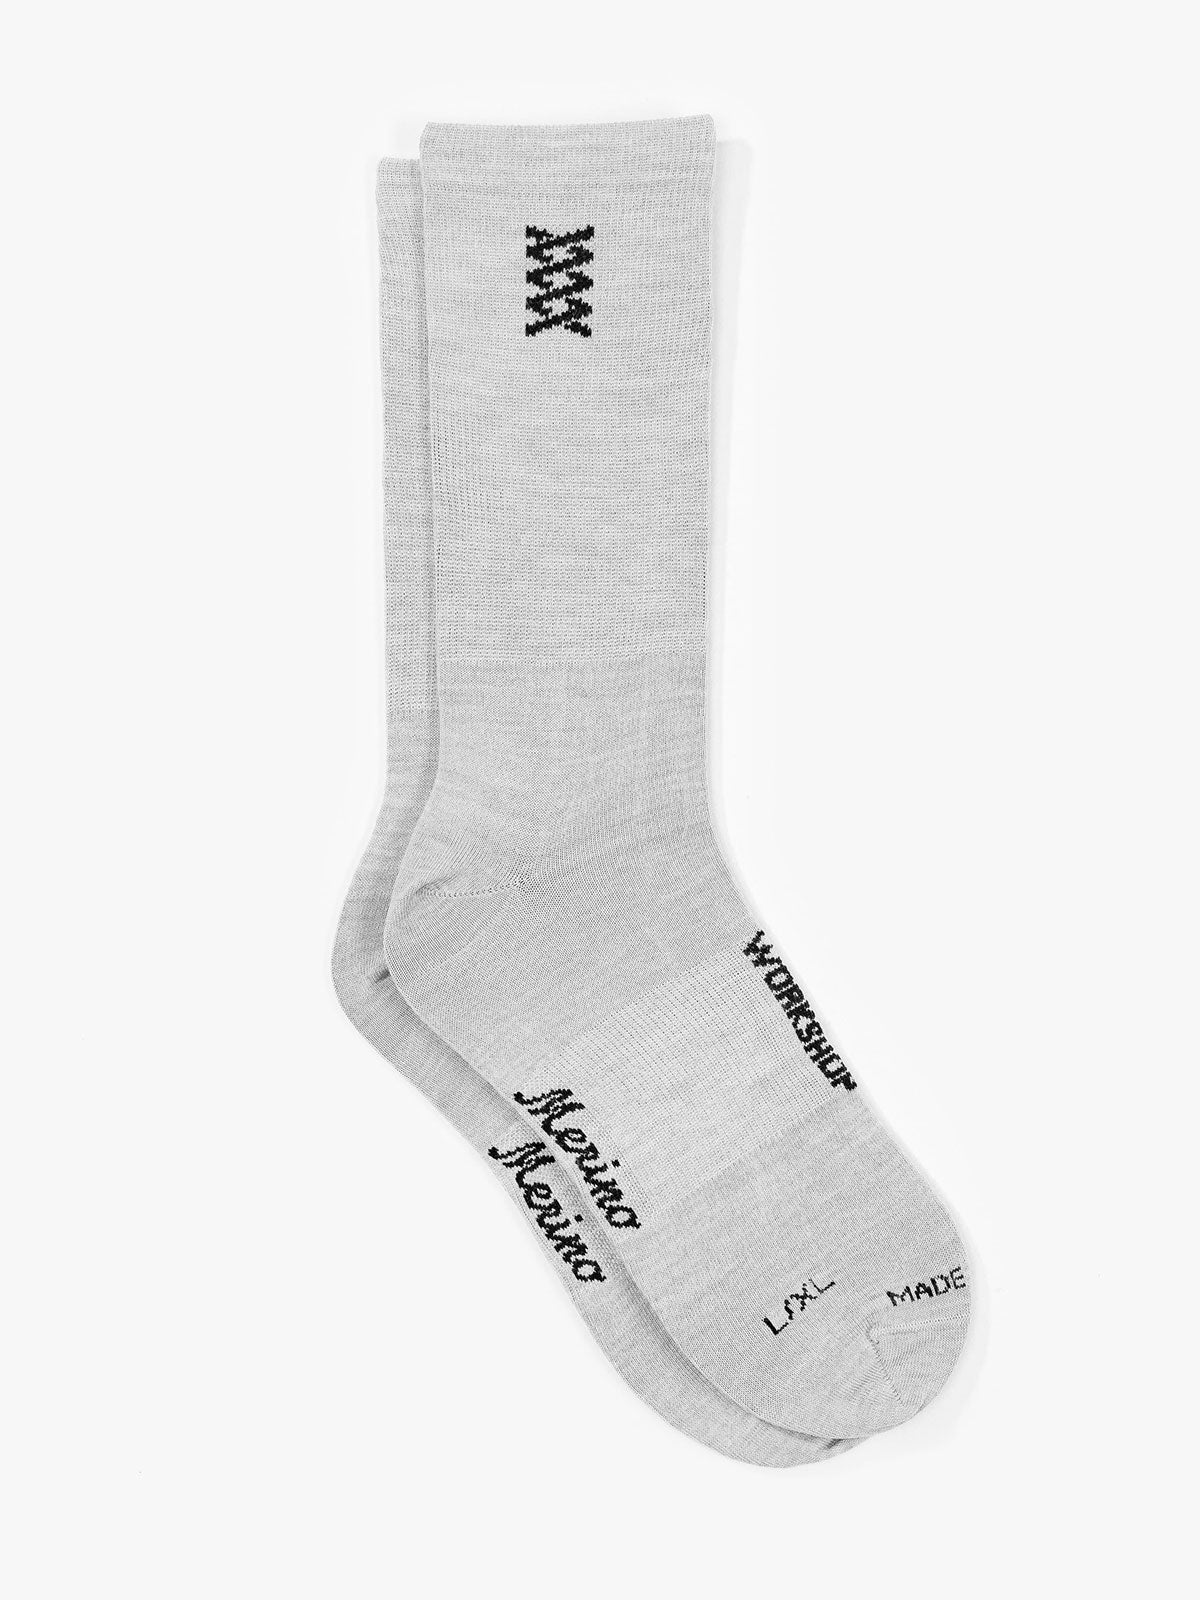 Mission Pro Wool Socks by Mission Workshop - Weerbestendige tassen & technische kleding - San Francisco & Los Angeles - Gemaakt om te doorstaan - Voor altijd gegarandeerd